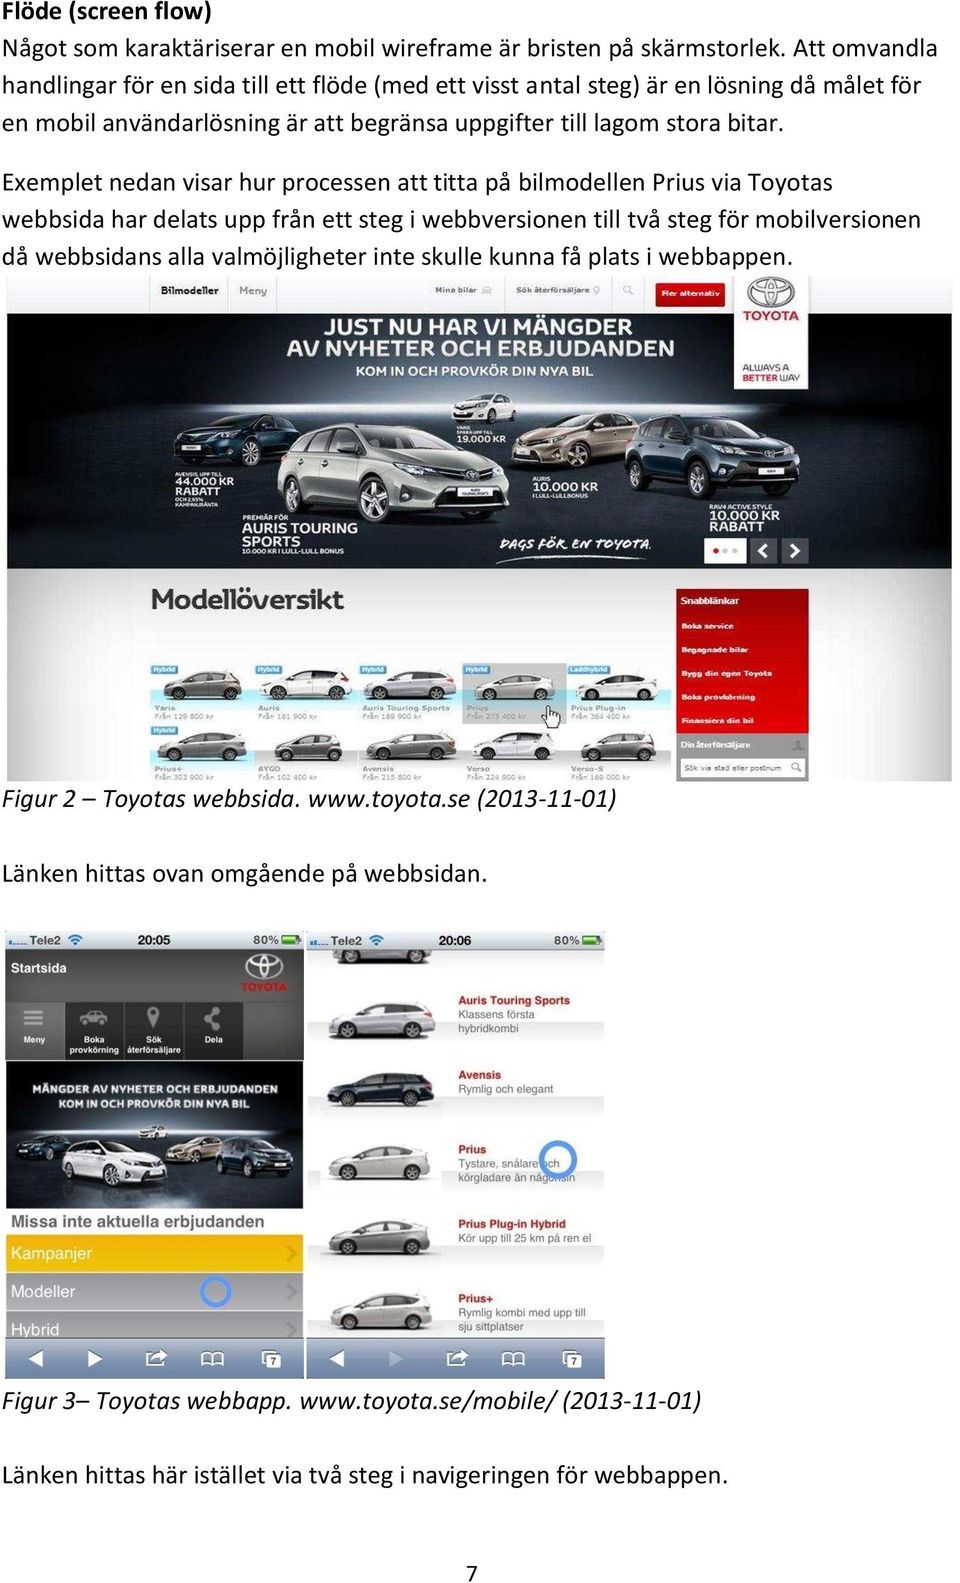 Exemplet nedan visar hur processen att titta på bilmodellen Prius via Toyotas webbsida har delats upp från ett steg i webbversionen till två steg för mobilversionen då webbsidans